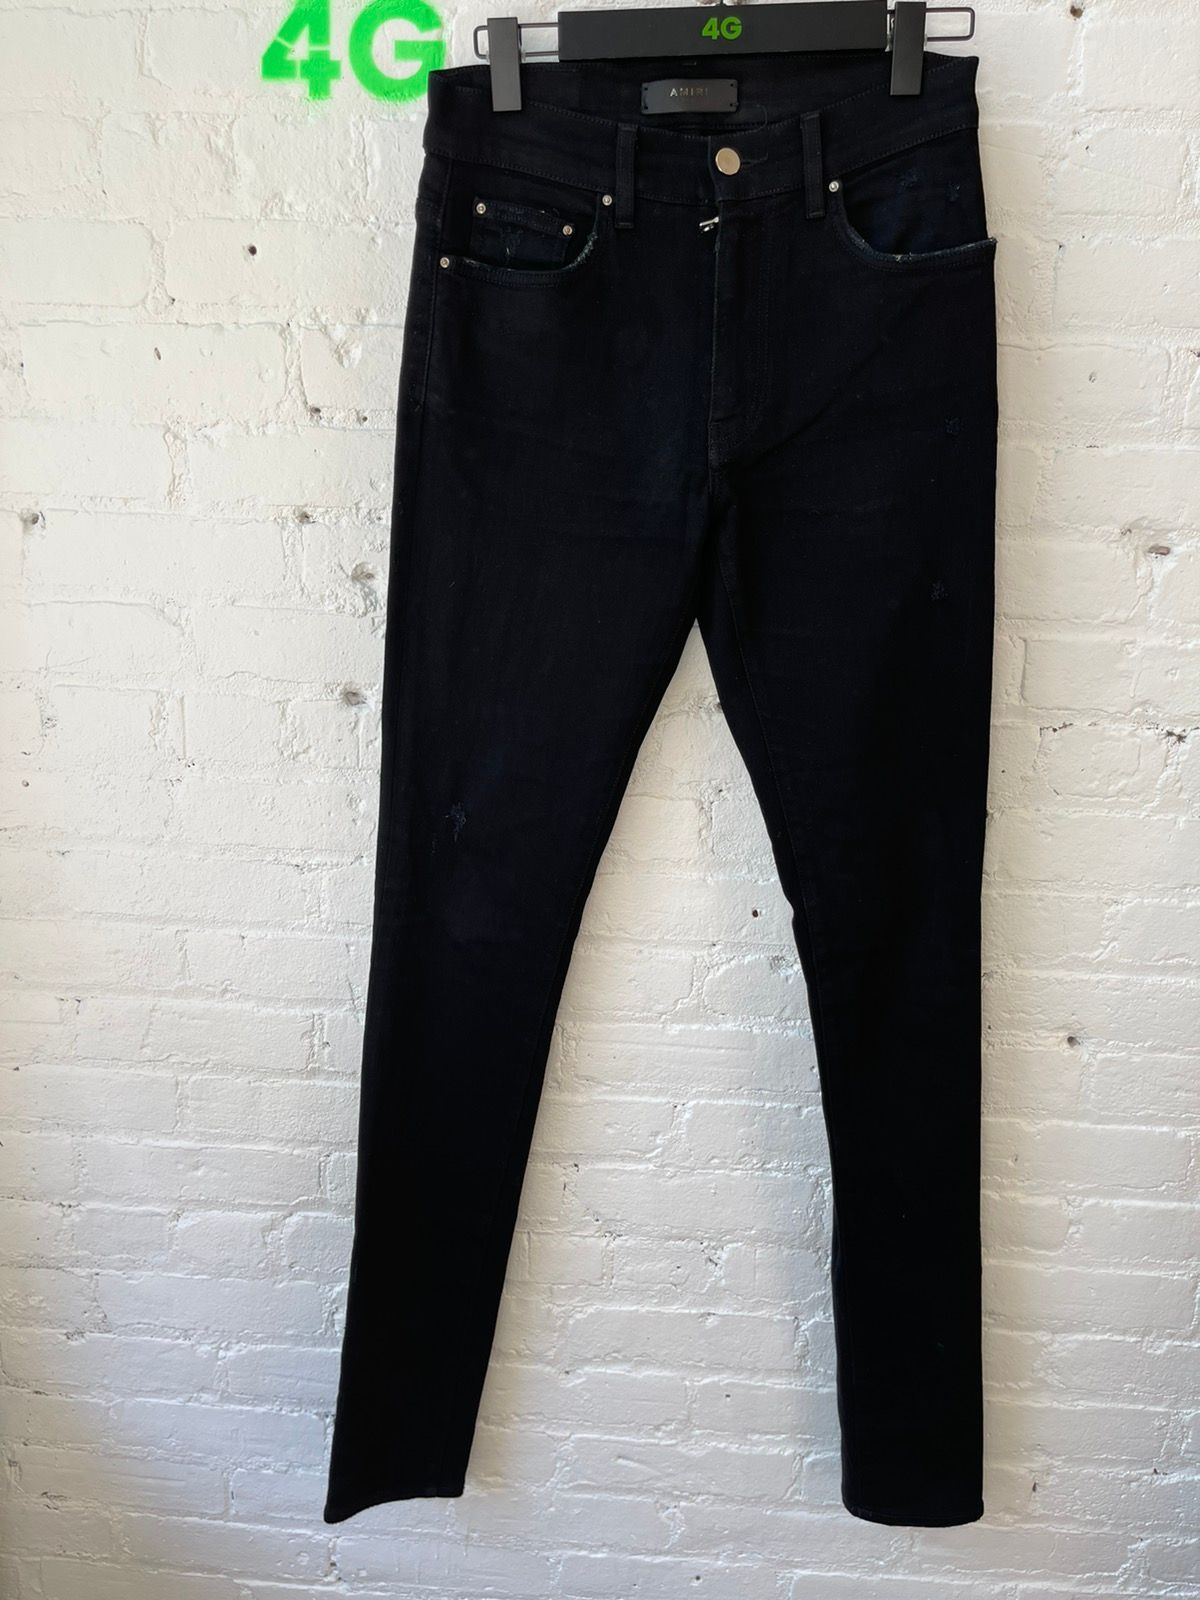 Amiri Black skinny distressed jeans sz 29